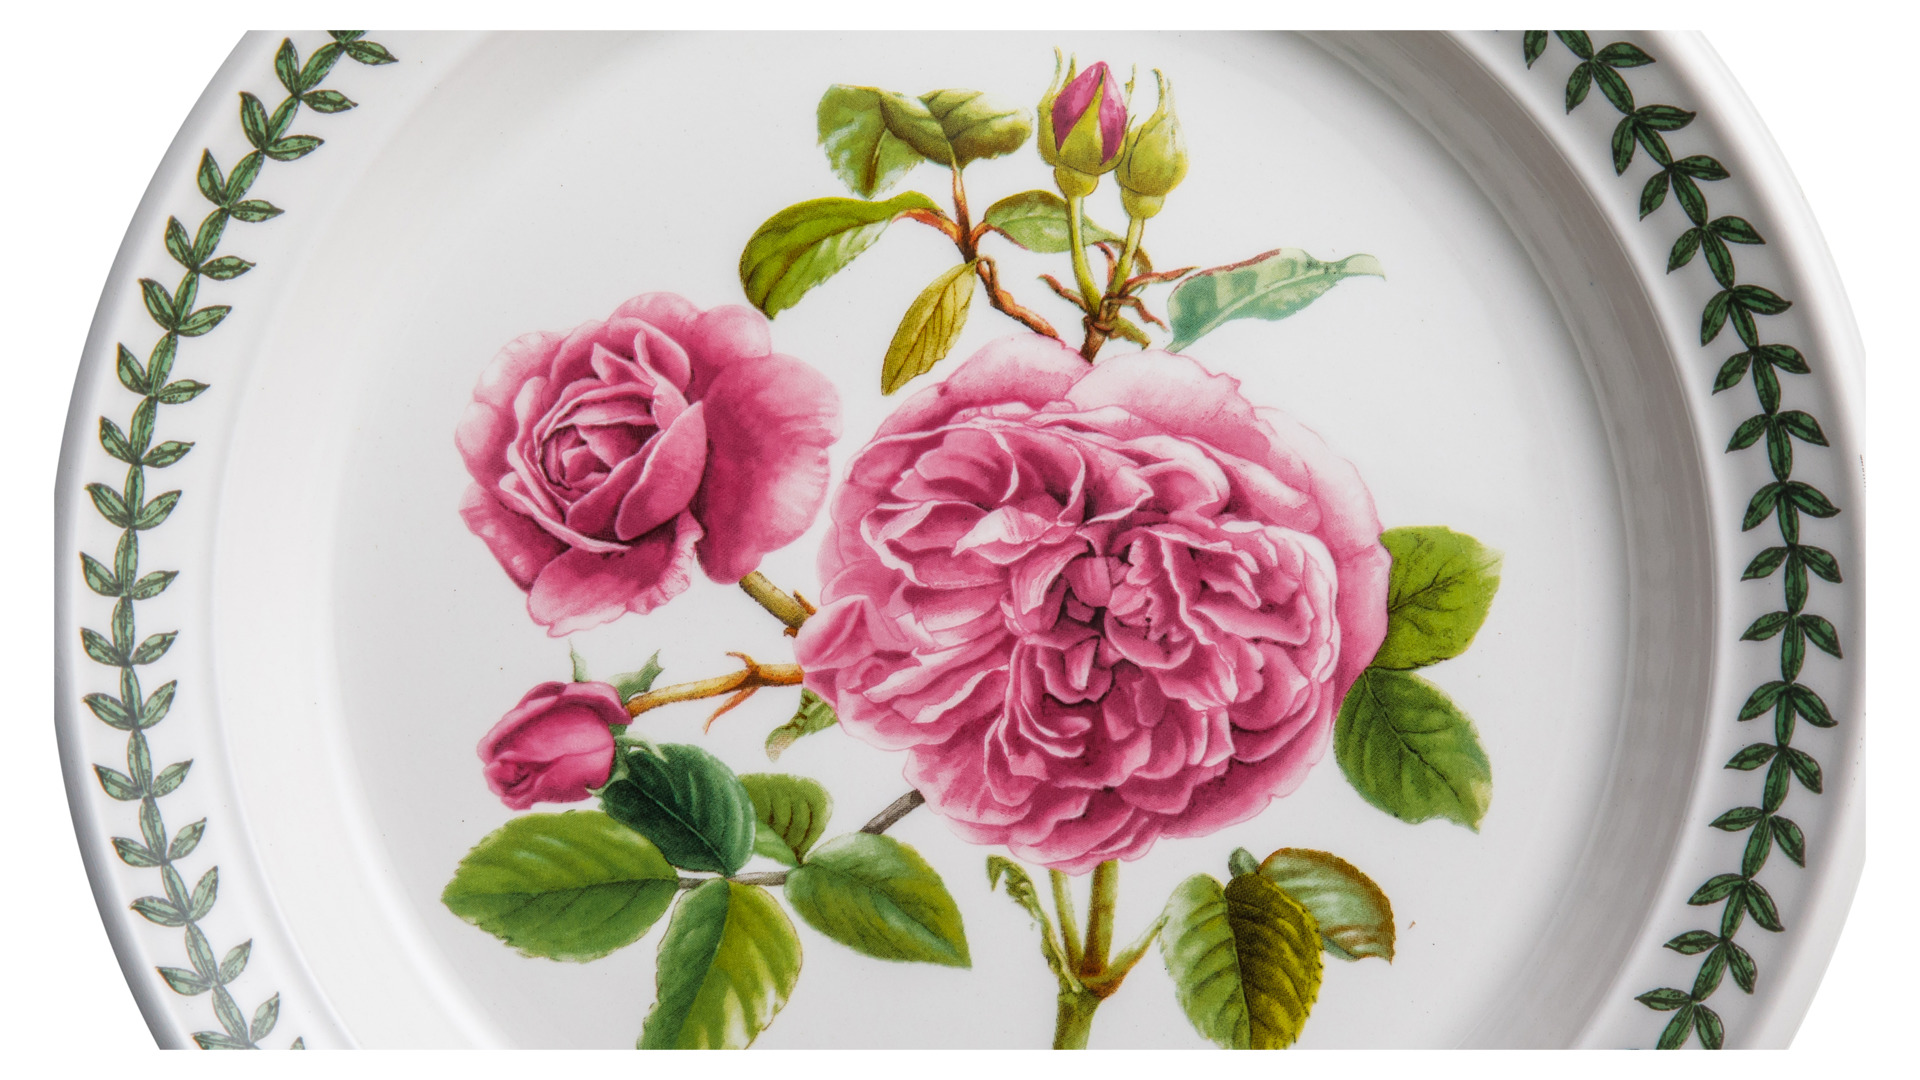 Тарелка закусочная Portmeirion Ботанический сад Розы Роза Портмейрион 20 см